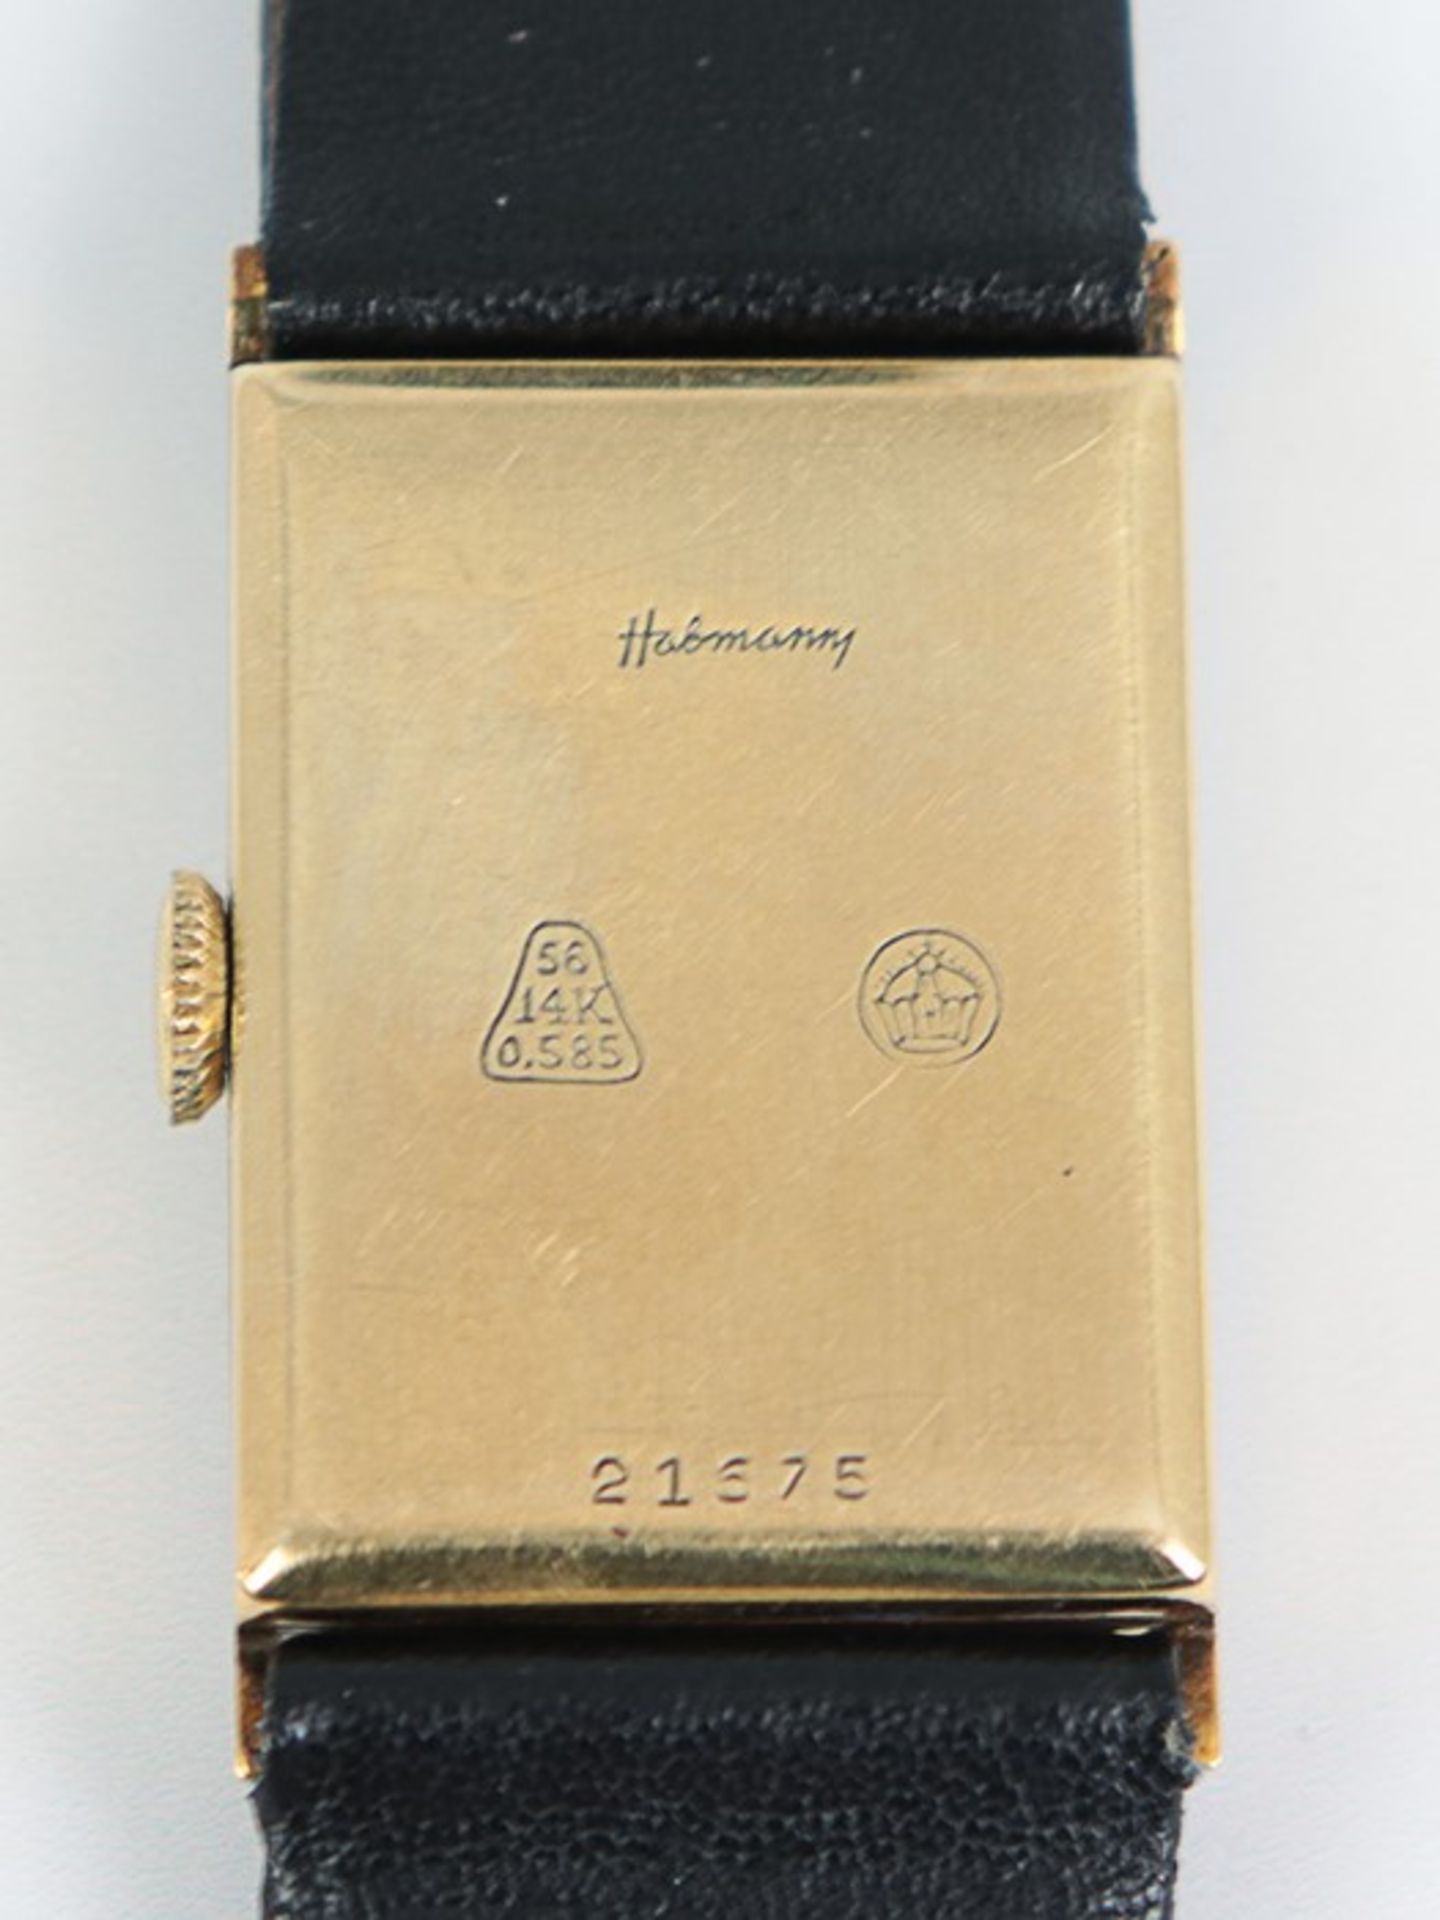 Habmann - DamenarmbanduhrGG 585, rechteckiges Gehäuse, goldfarbenes Zifferblatt, arab. Ziffern, - Bild 2 aus 2